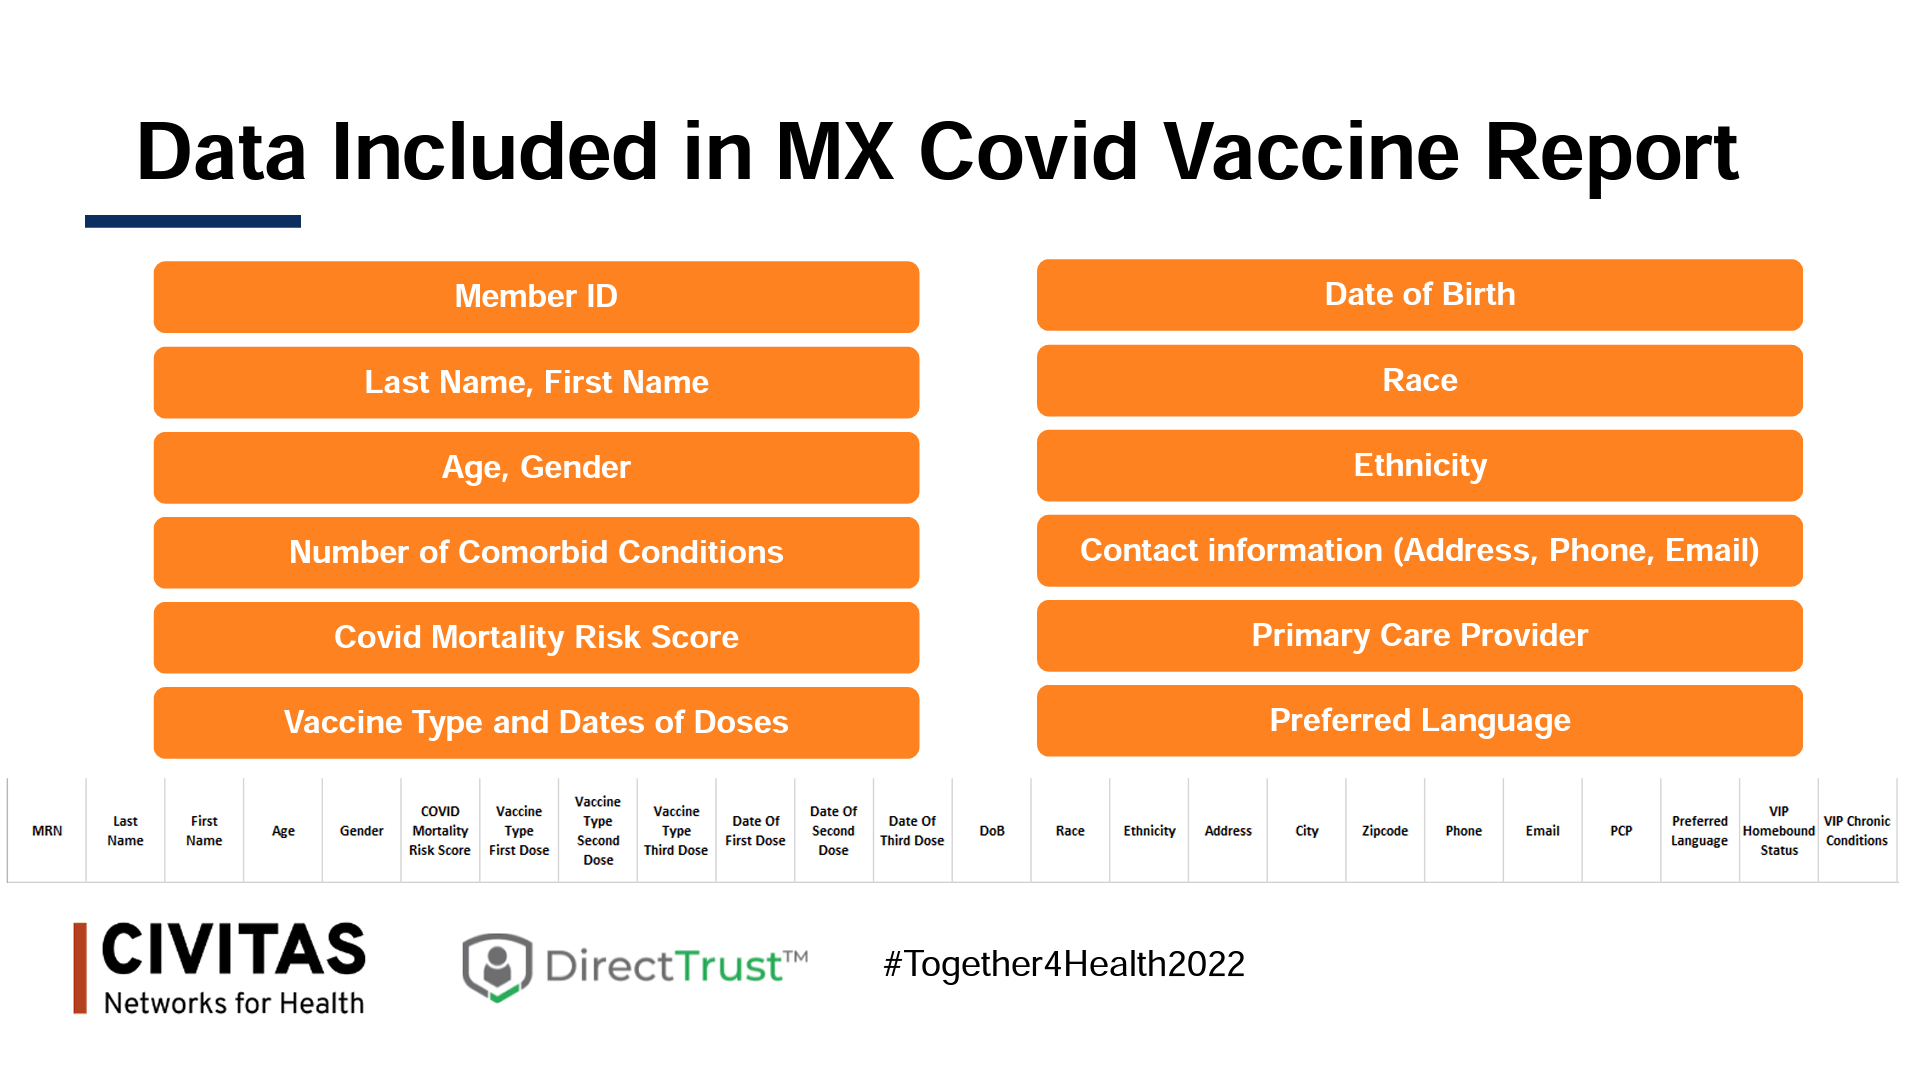 MX Covid Vaccine Report